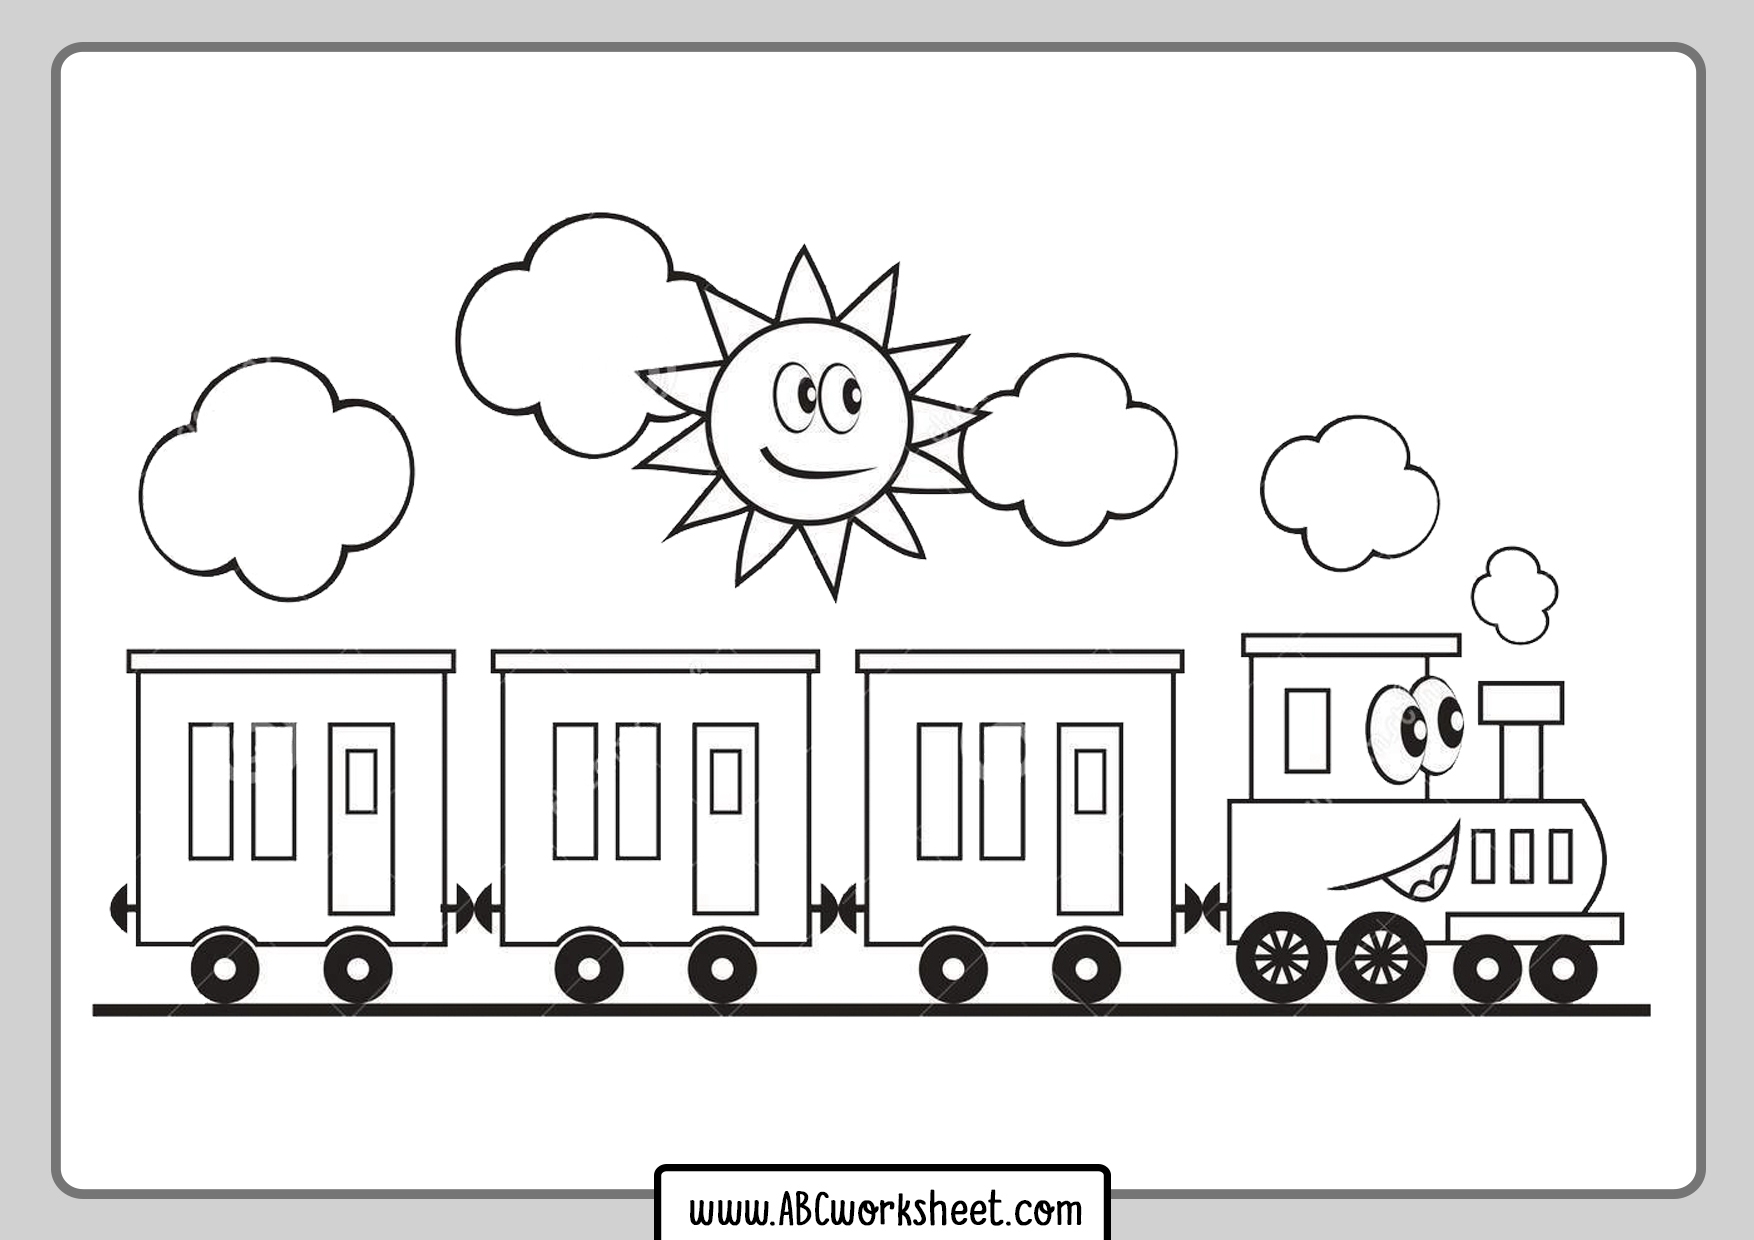 Раскраска поезд с вагонами для детей распечатать